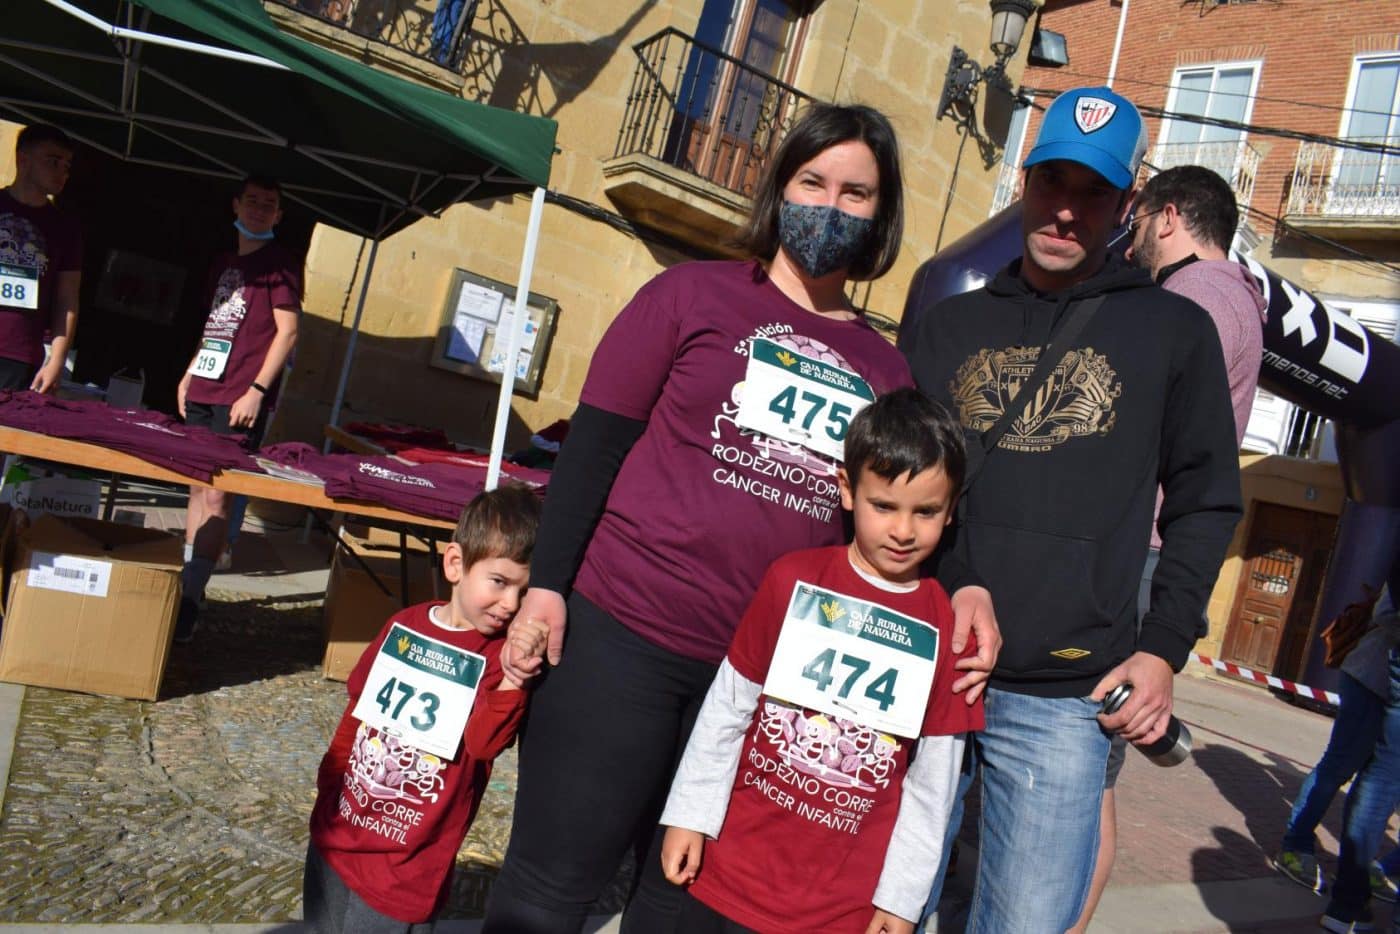 FOTOS: Rodezno recupera el pulso de correr contra el cáncer infantil 19